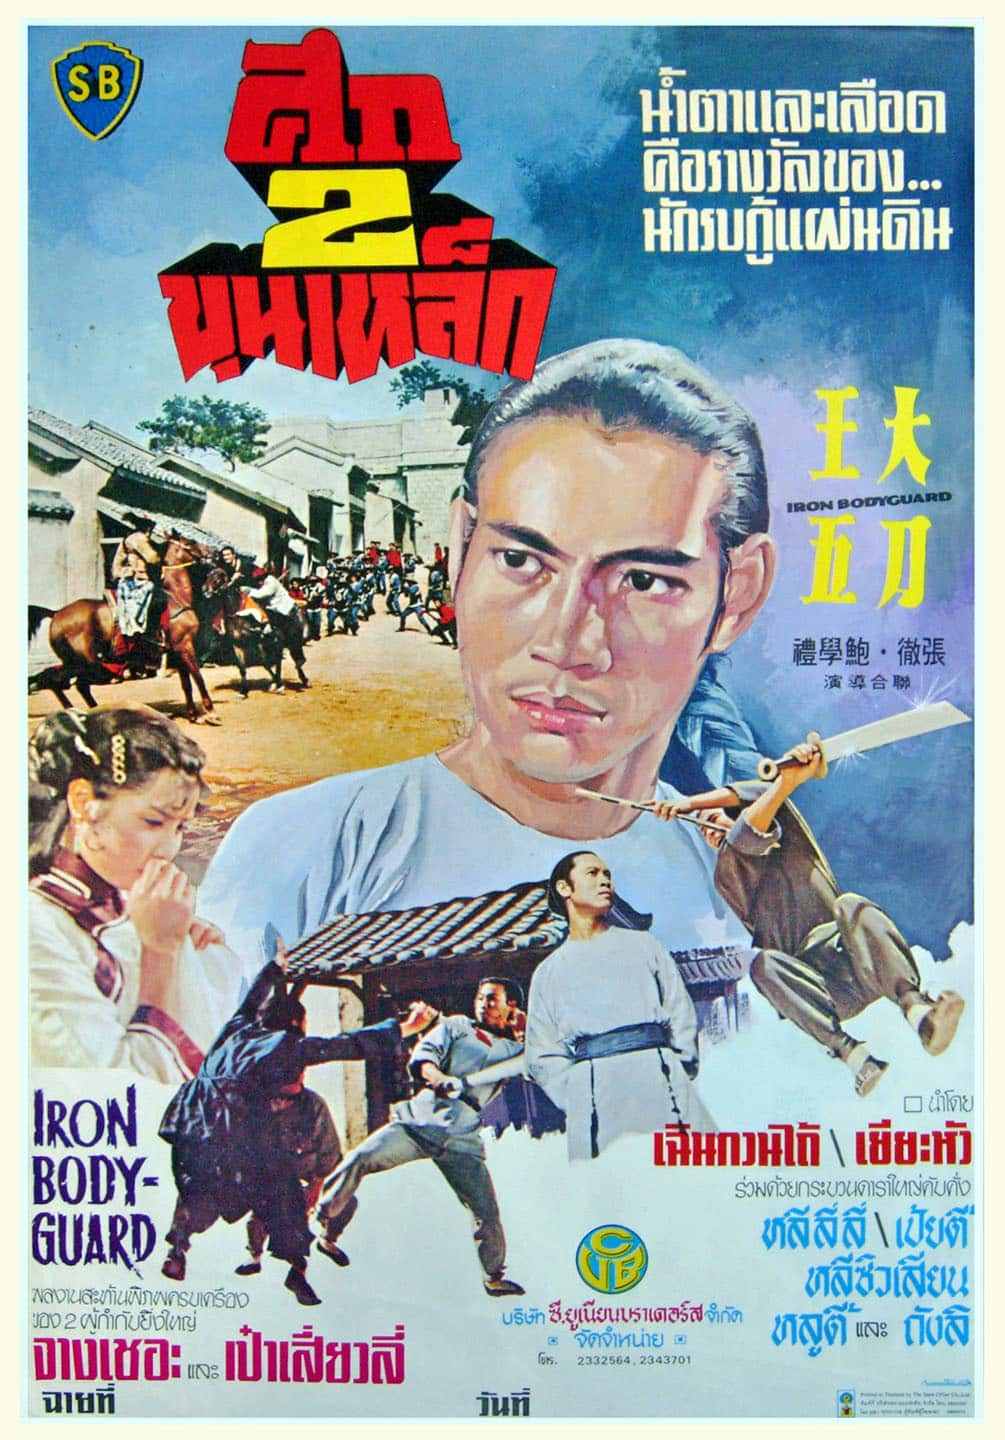 ดูหนังออนไลน์ฟรี Iron Bodyguard (Da dao Wang Wu) (1973) ศึก 2 ขุนเหล็ก